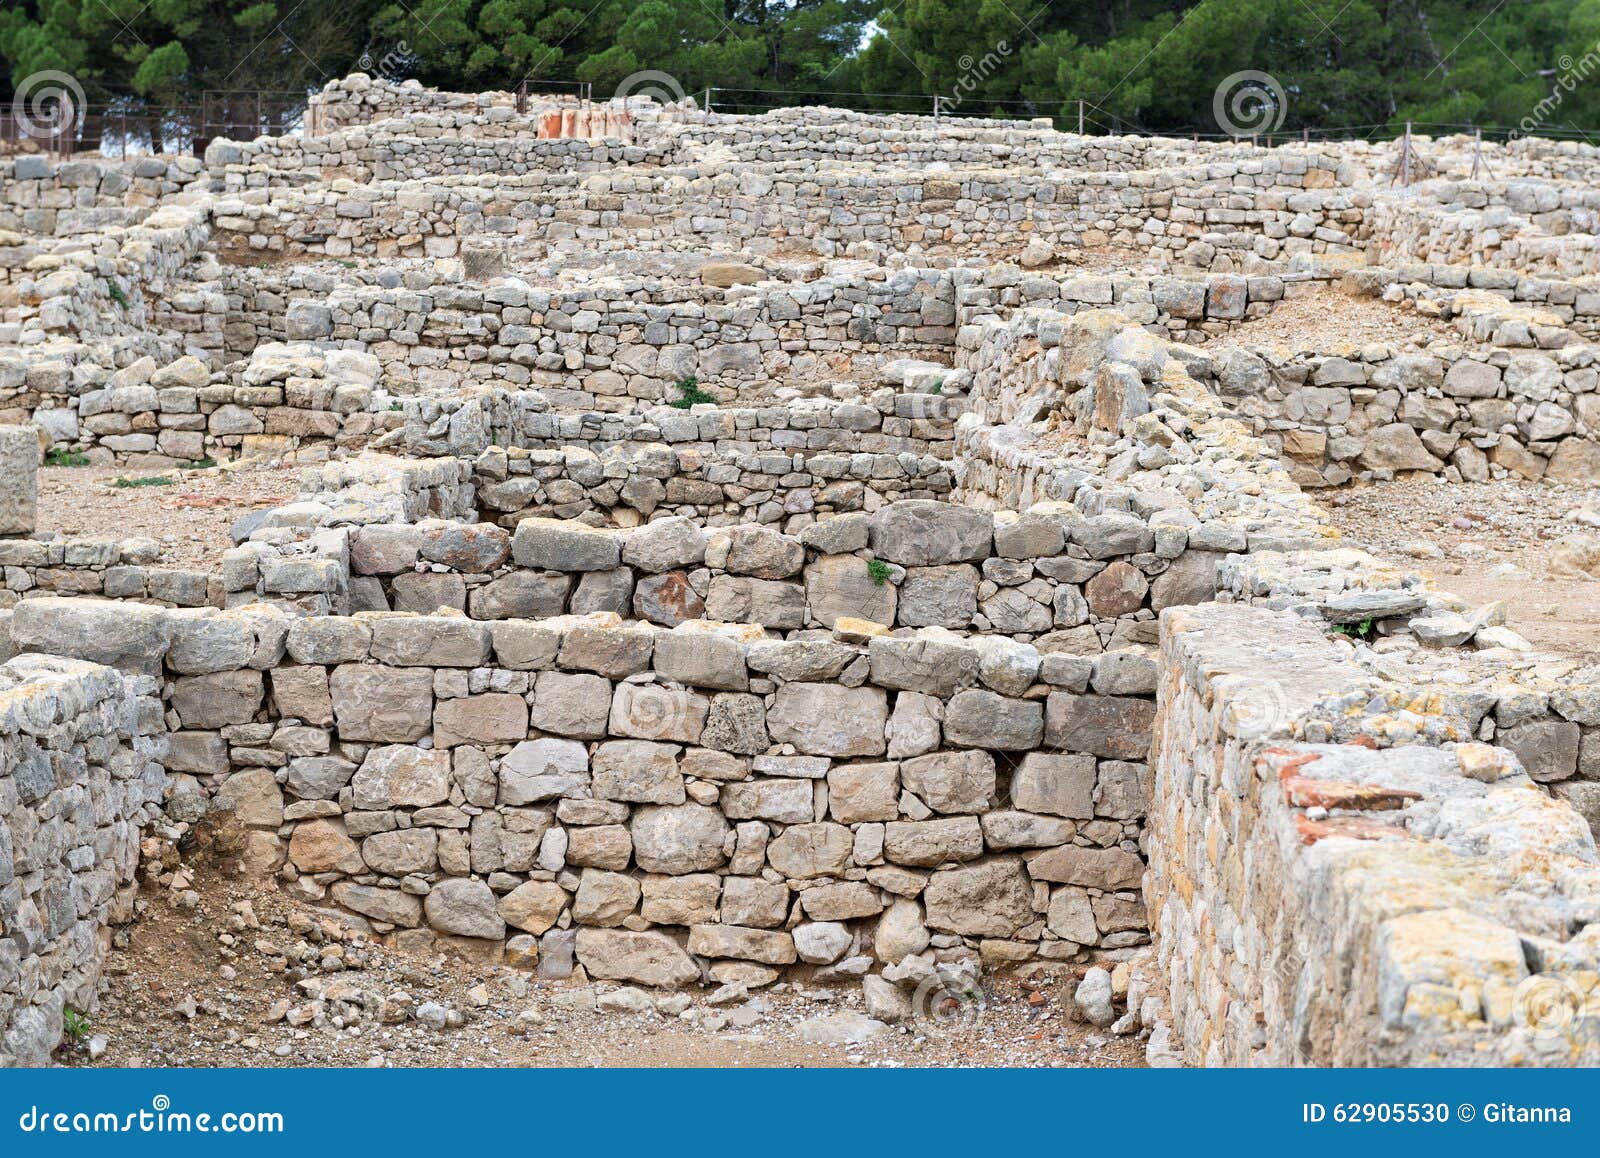 greek ruins of empuries